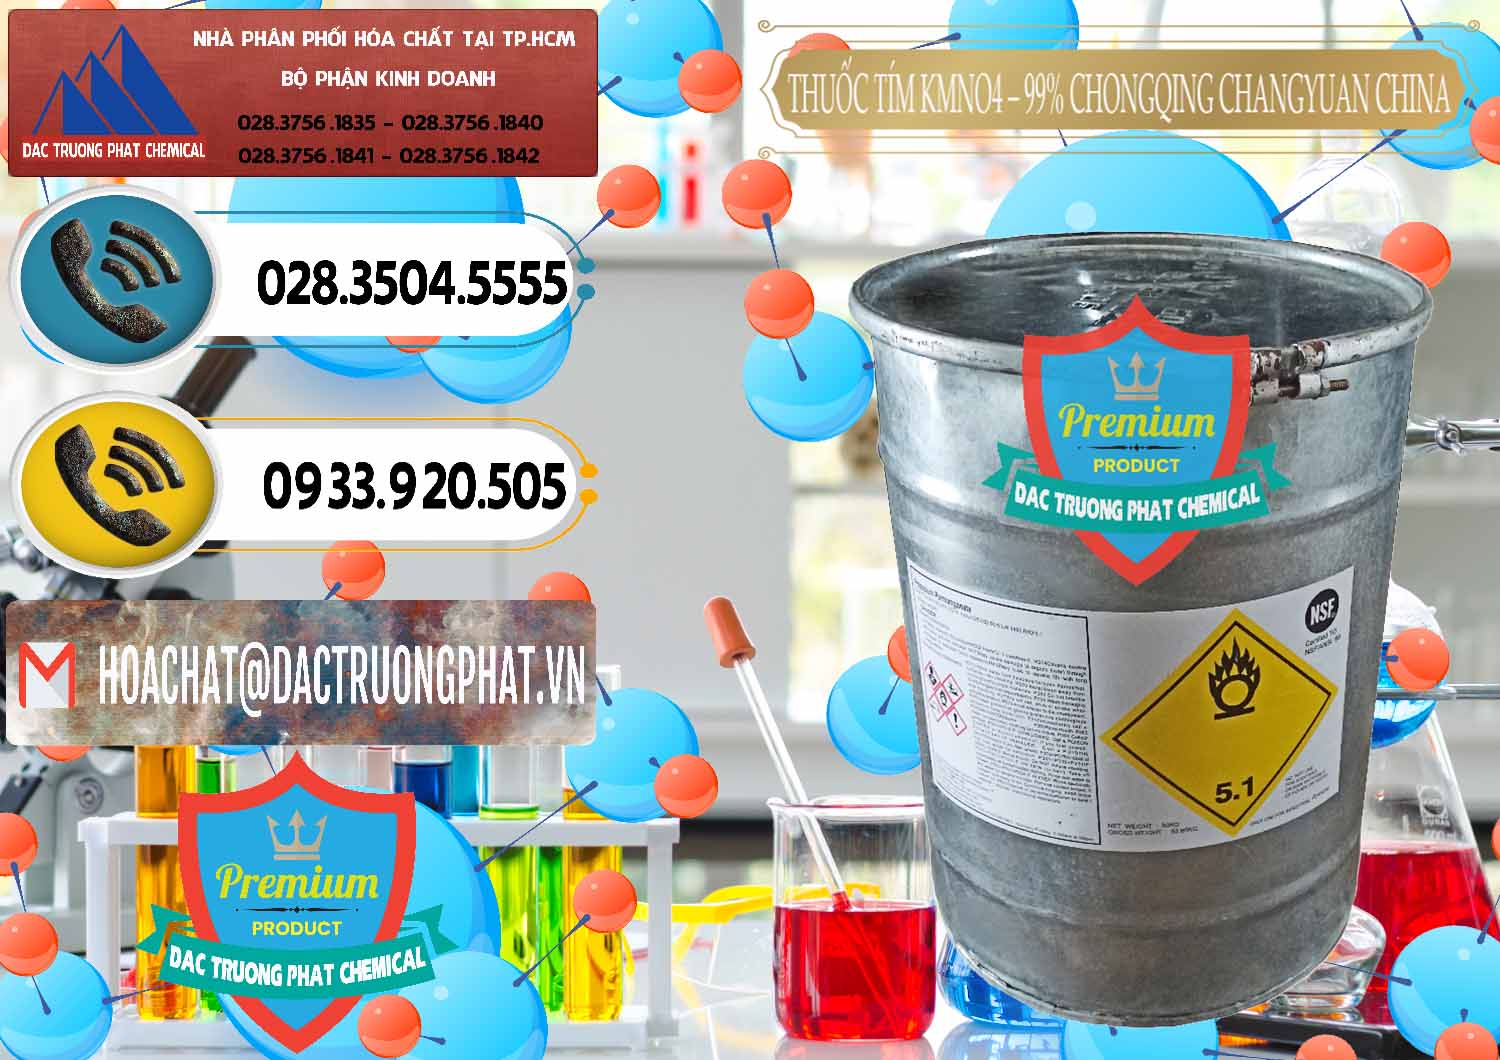 Công ty chuyên bán và cung ứng Thuốc Tím – KMNO4 99% Chongqing Changyuan Trung Quốc China - 0166 - Bán và phân phối hóa chất tại TP.HCM - hoachatdetnhuom.vn